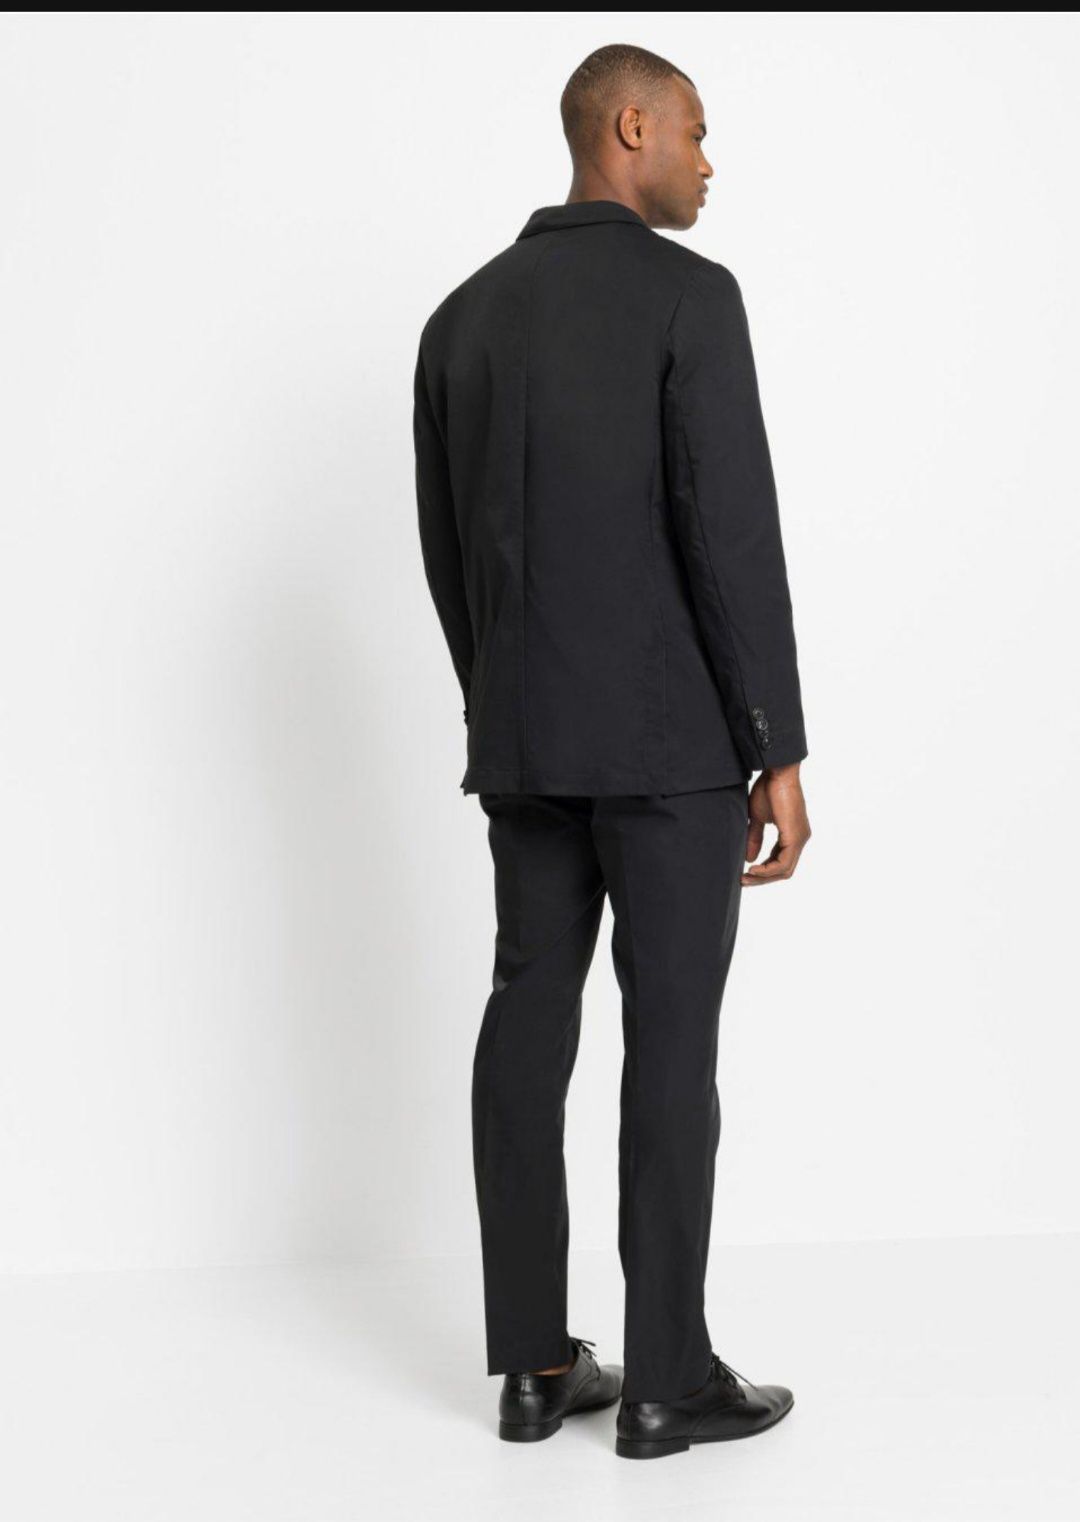 Nowy garnitur męski czarny elegancki jednorzędowy rozmiar 52